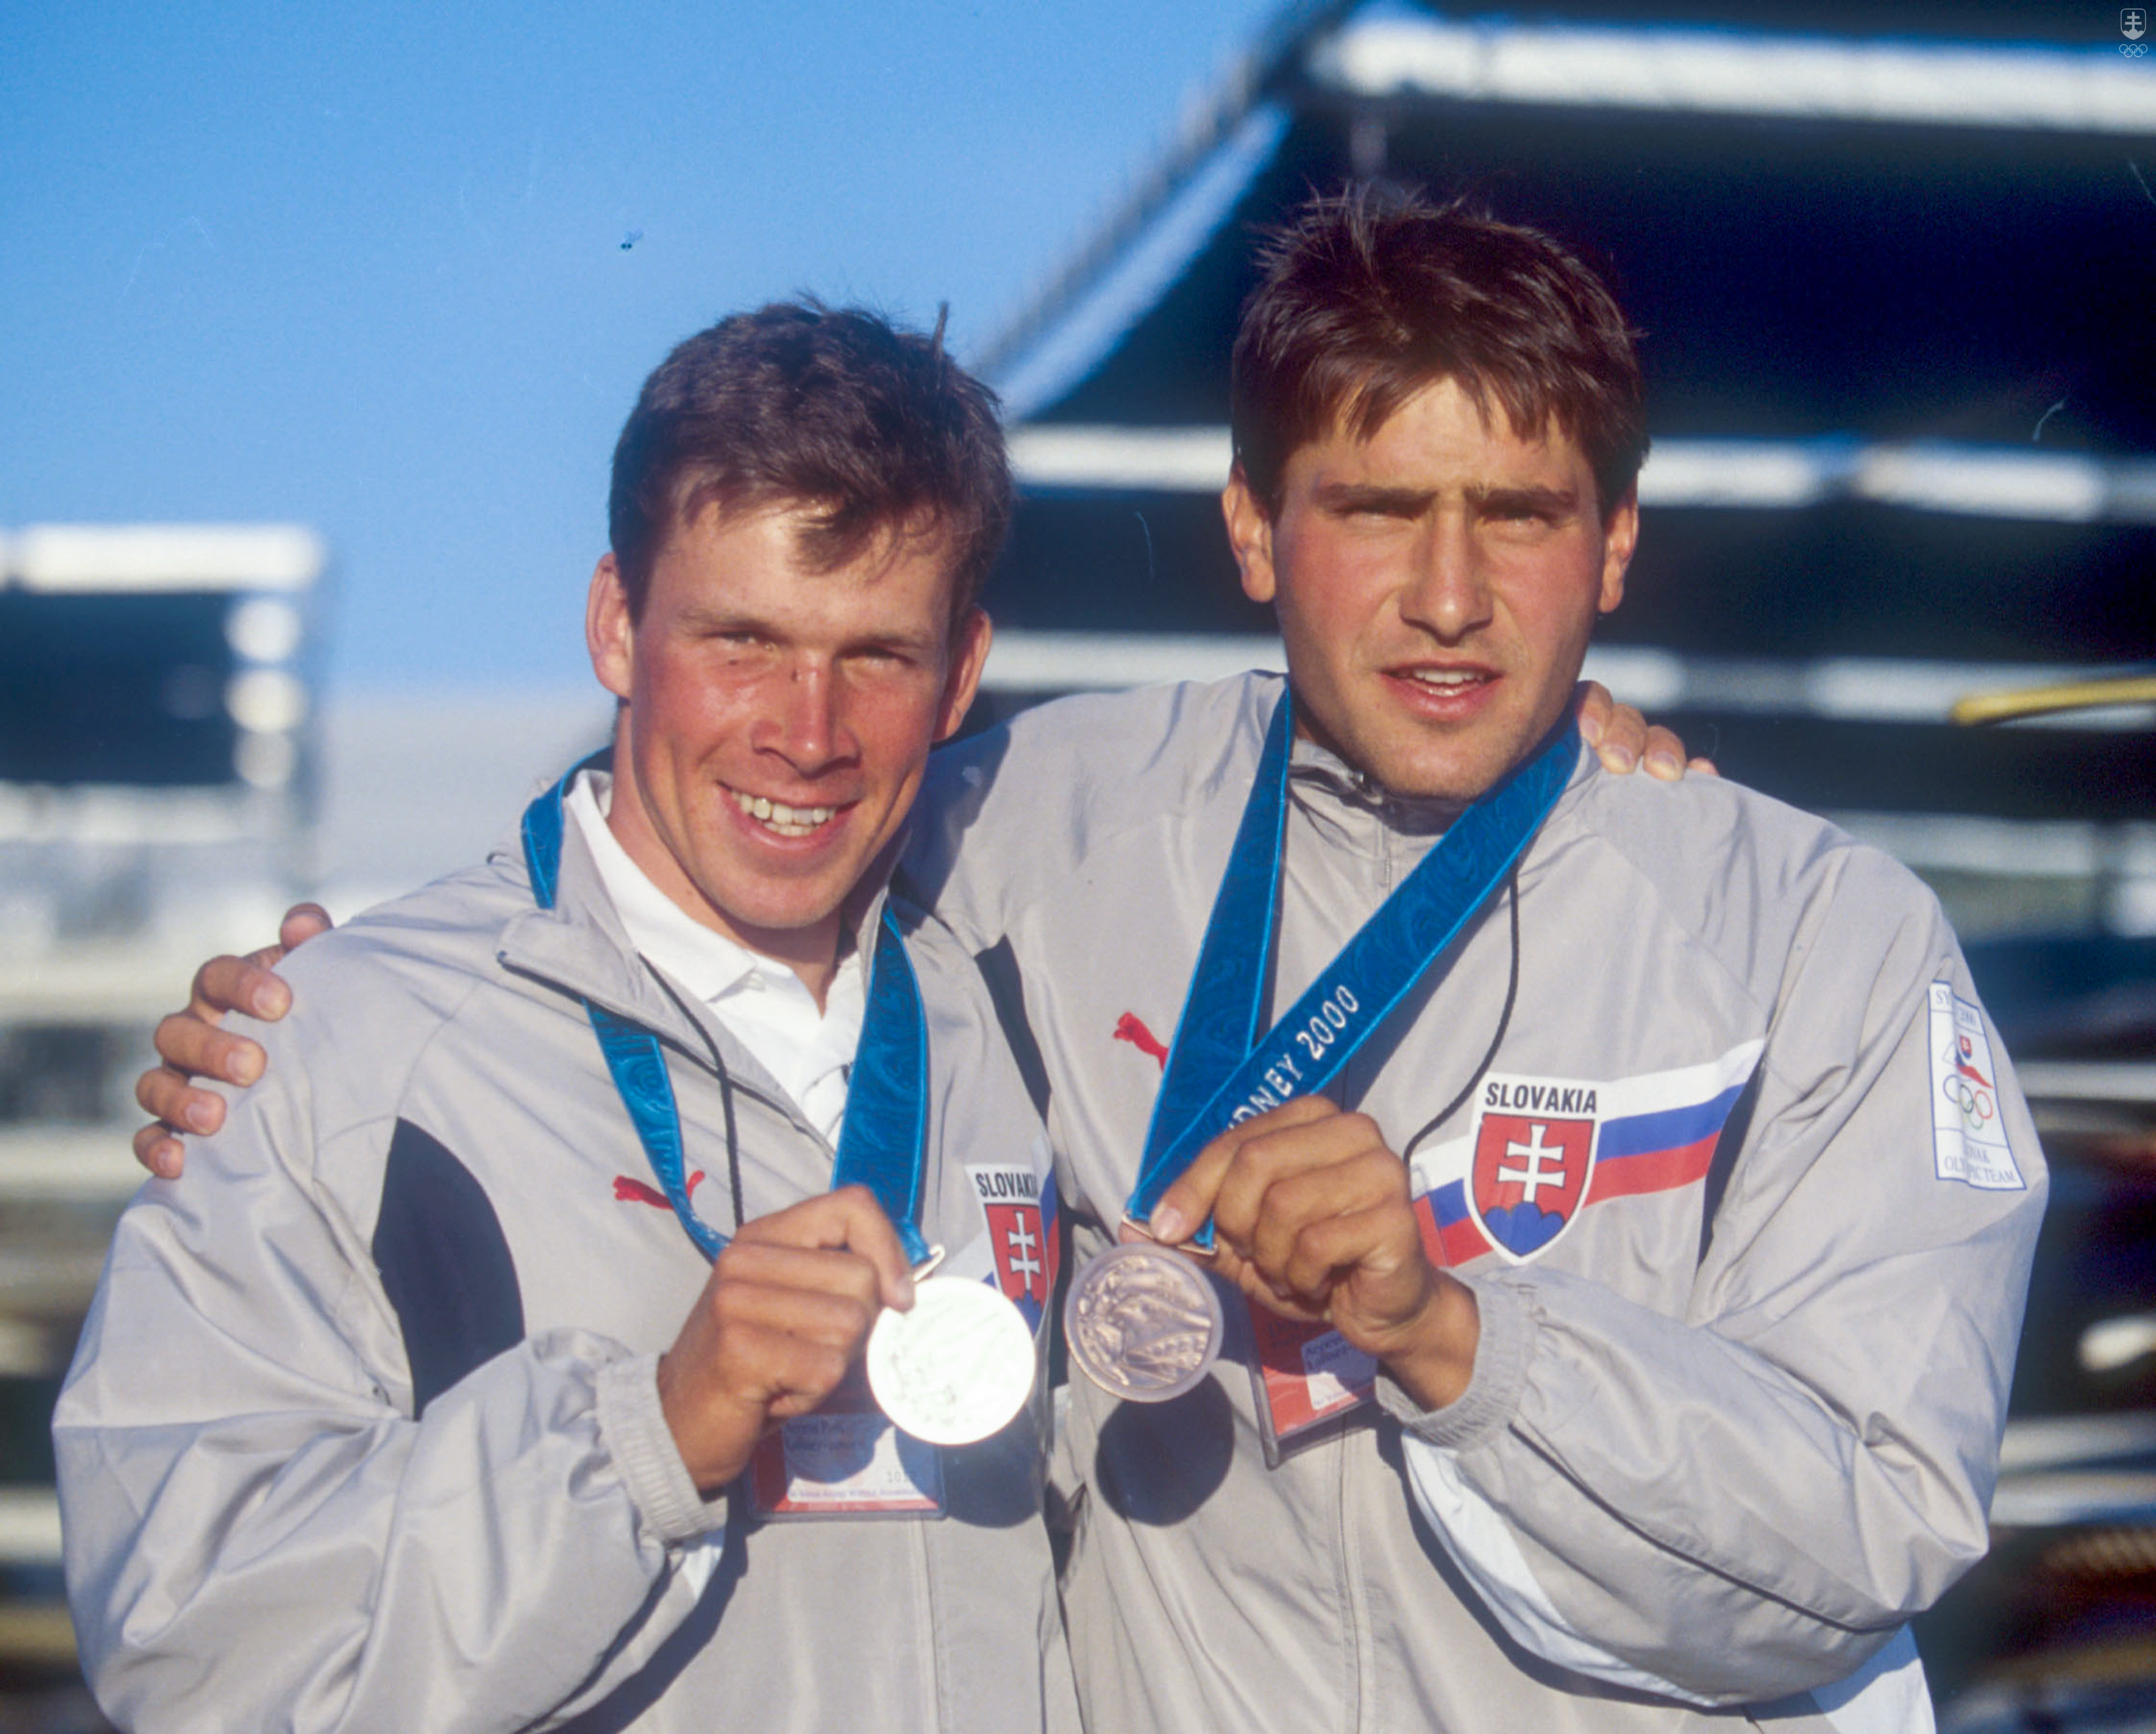 Unikátna chvíľa – dvaja Slováci s olympijskými medailami z tej istej súťaže na OH 2000: Michal Martikán so striebrom, Juraj Minčík s bronzom.